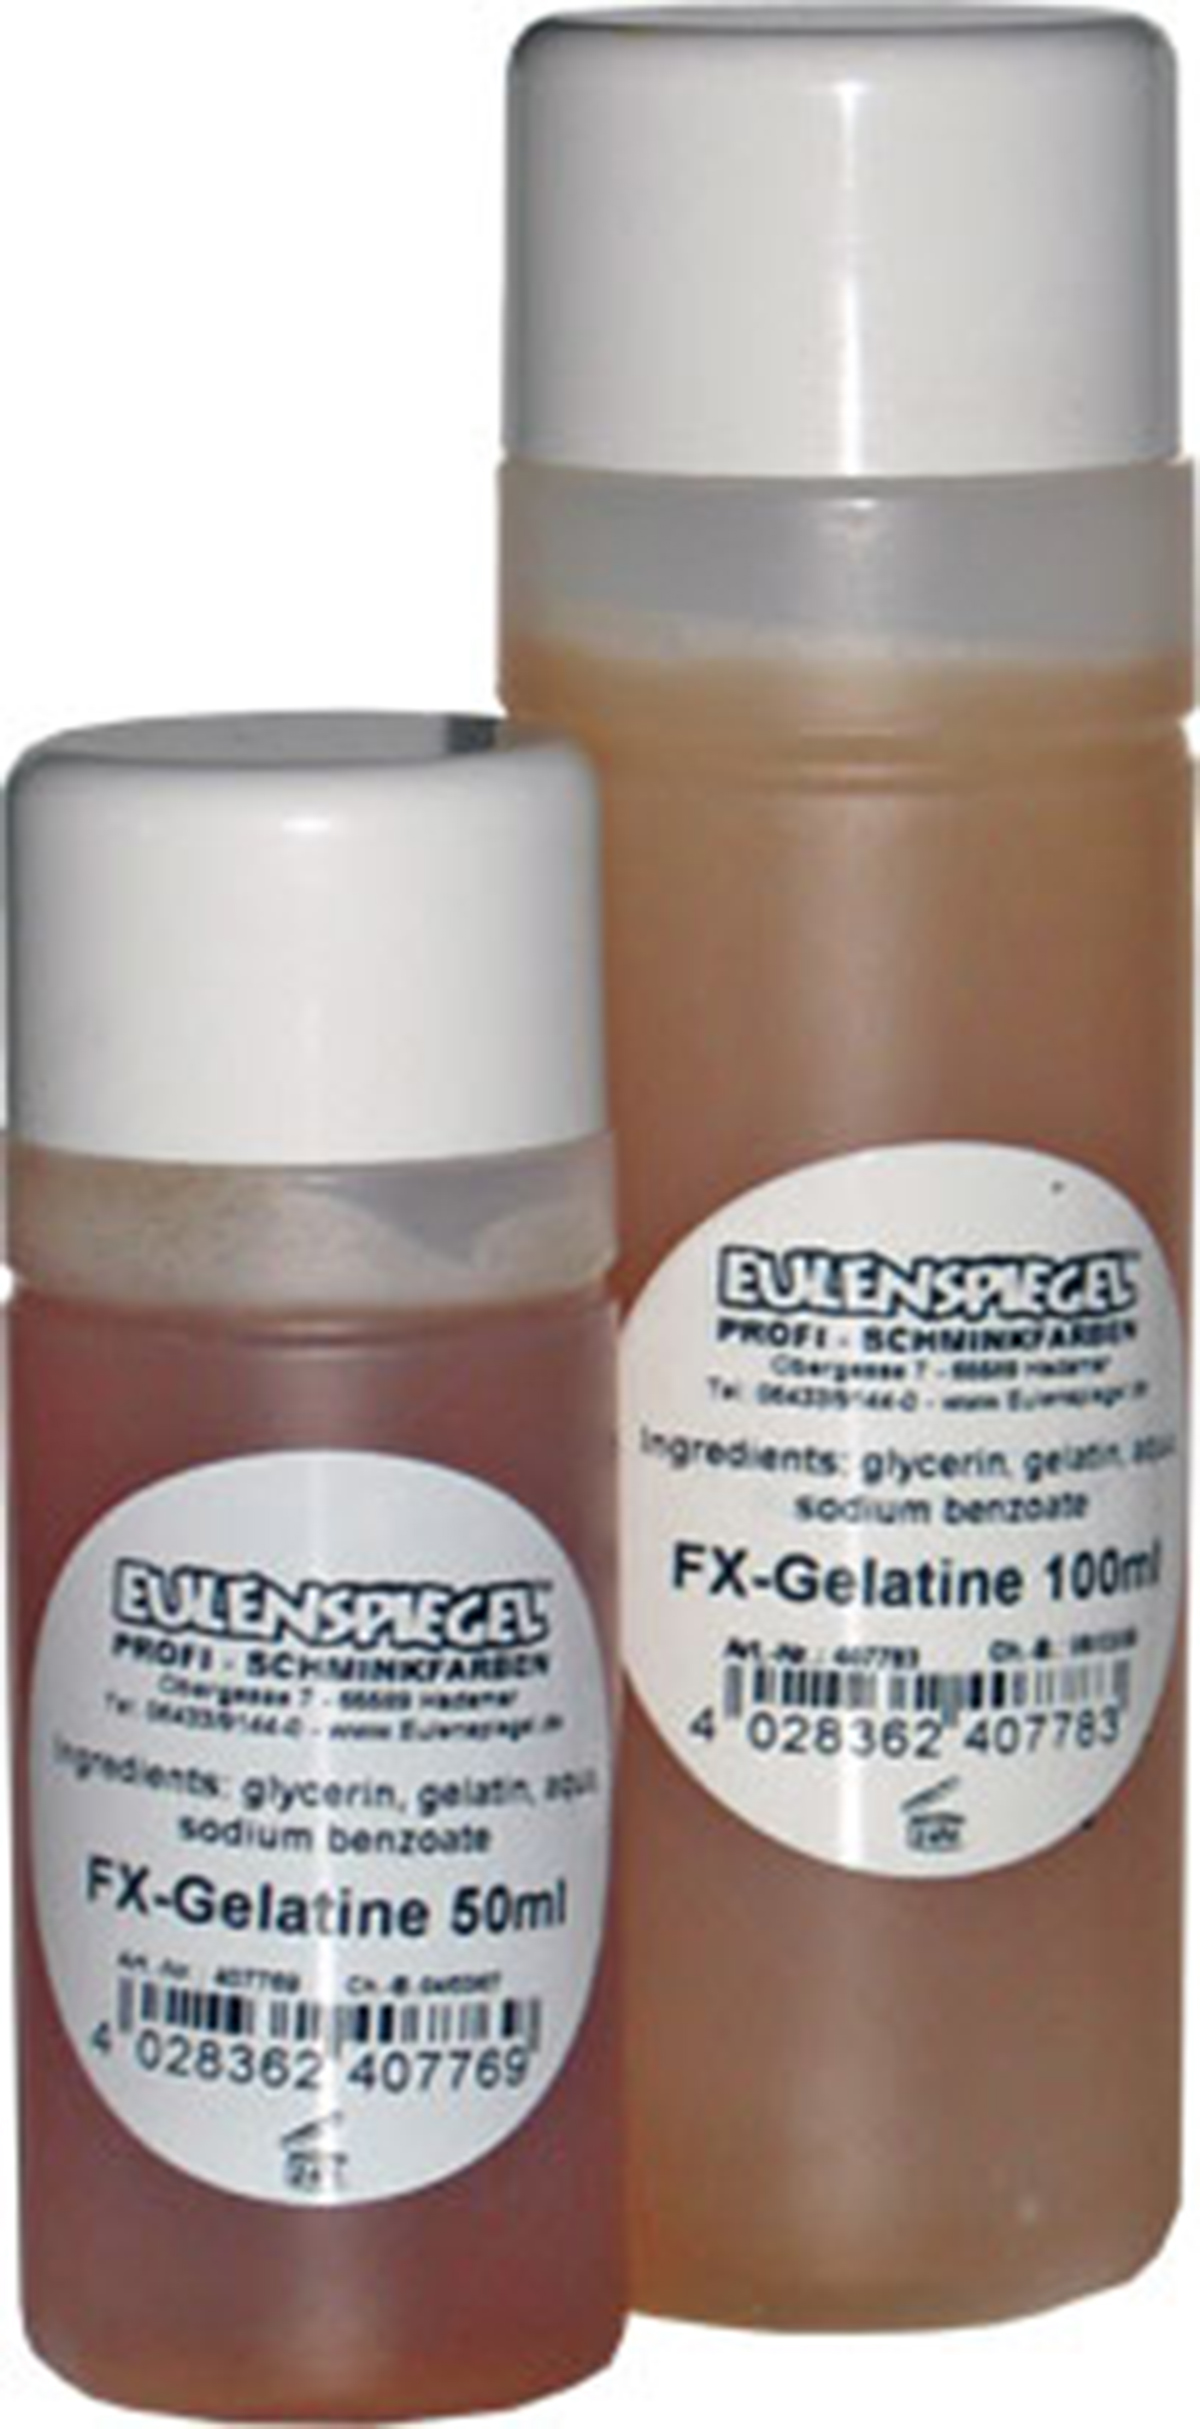 FX-Gelatine, 50ml Eulenspiegel FX, in Flasche